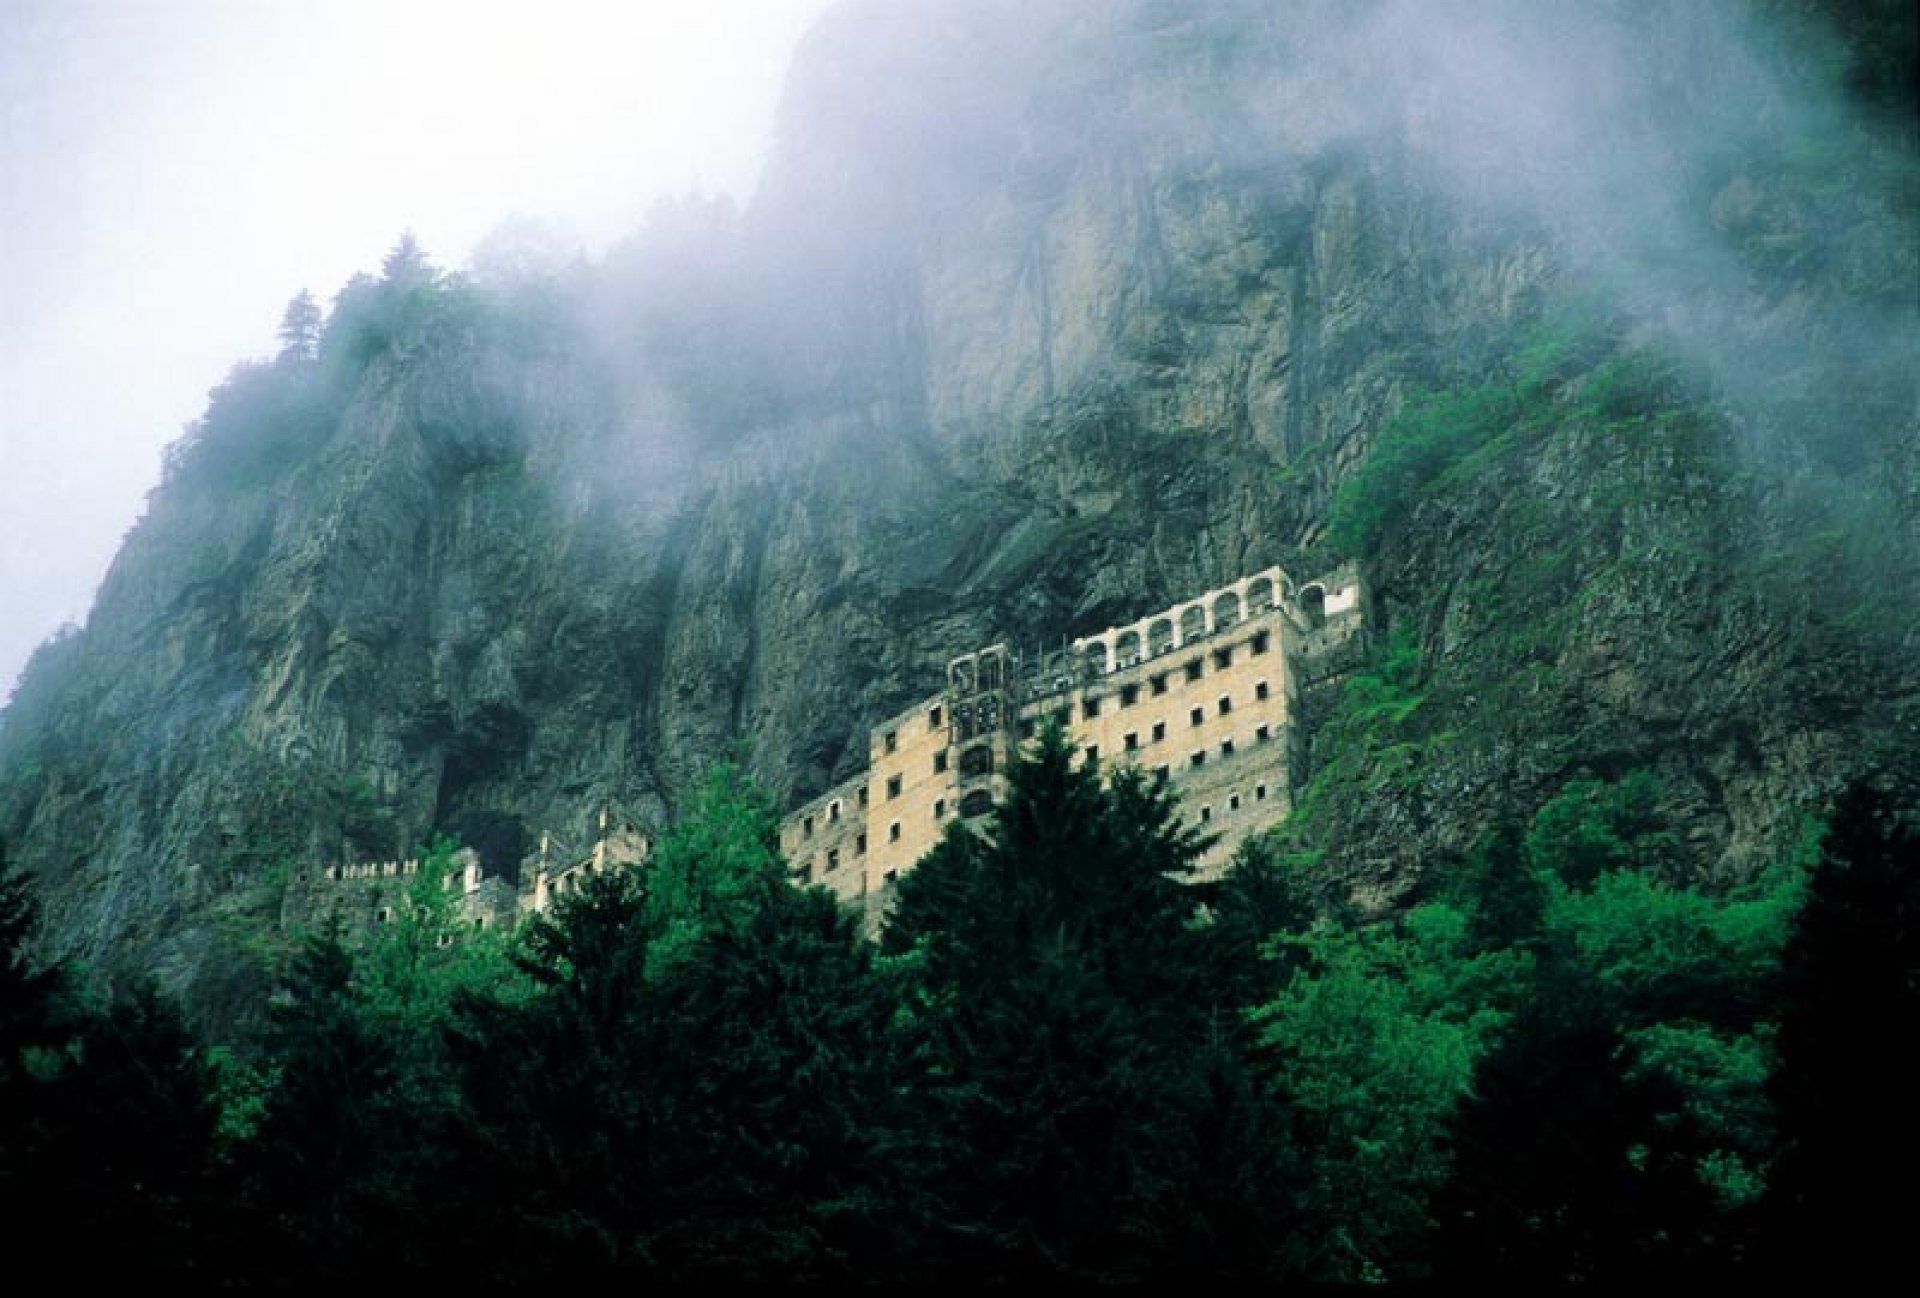  Trabzon  Sumela Monastery Tour 5